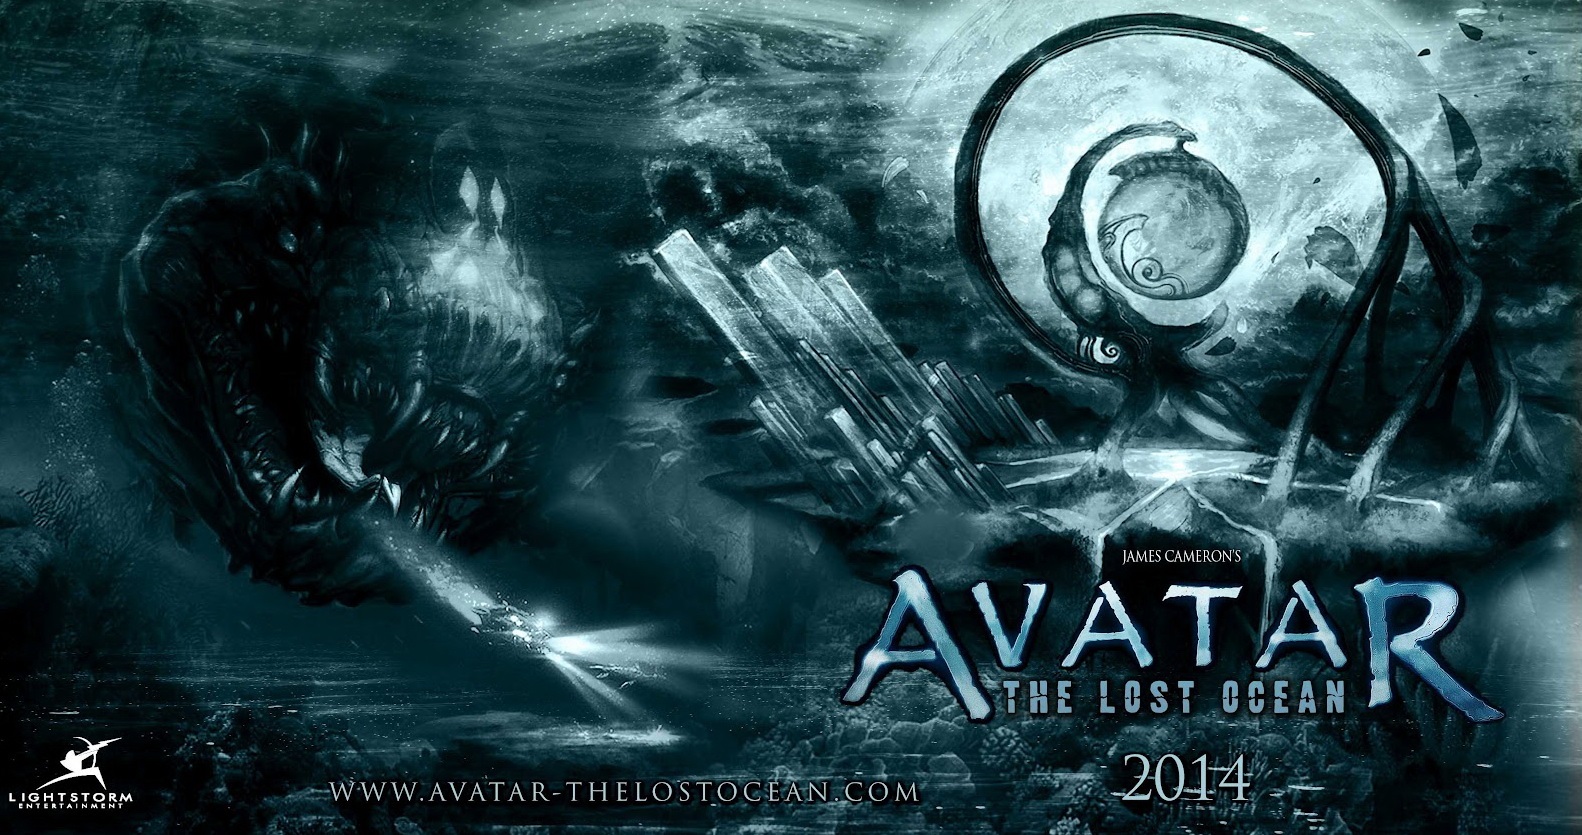 Prv klapka alch Avatarov padne o rok